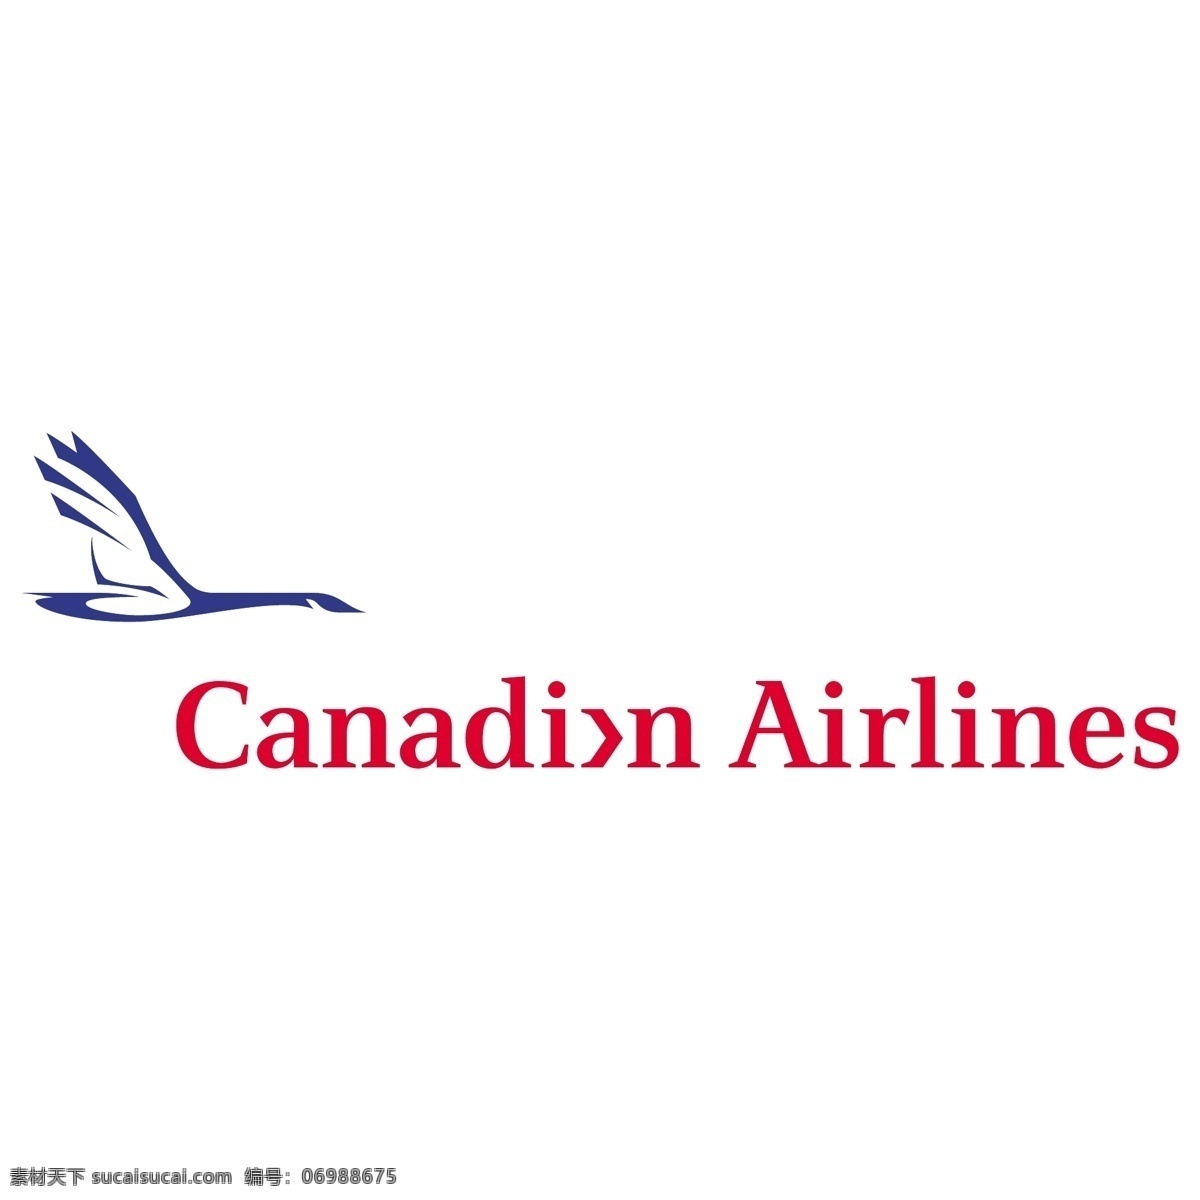 加拿大航空公司 标识 公司 免费 品牌 品牌标识 商标 矢量标志下载 免费矢量标识 矢量 psd源文件 logo设计